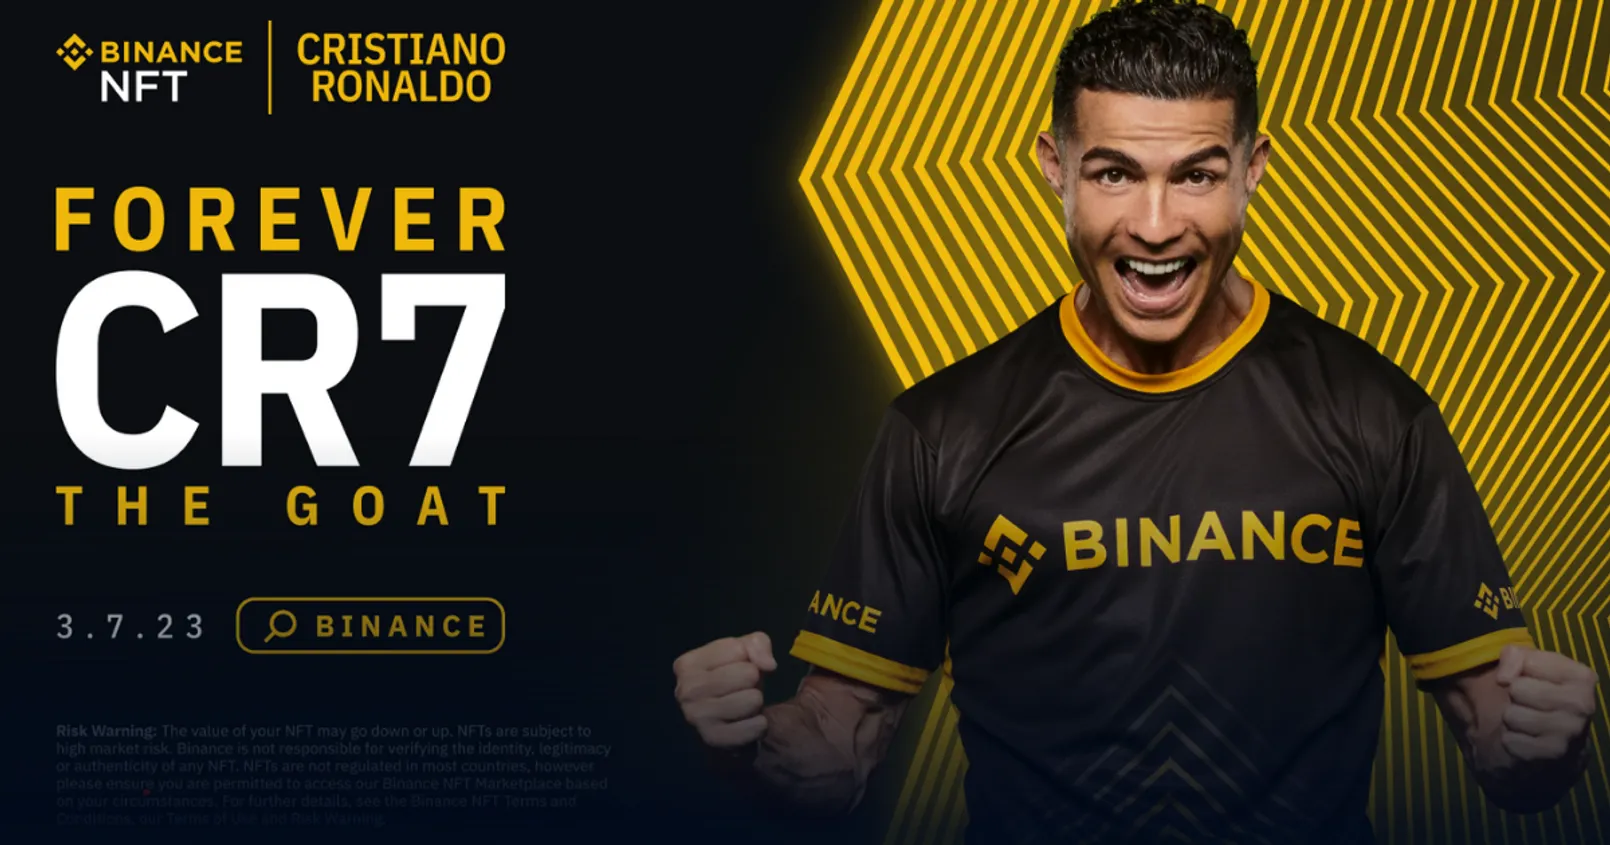 Binance ประกาศร่วมมือ 'Cristiano Ronaldo' สร้างคอลเลกชัน NFT อีกครั้ง